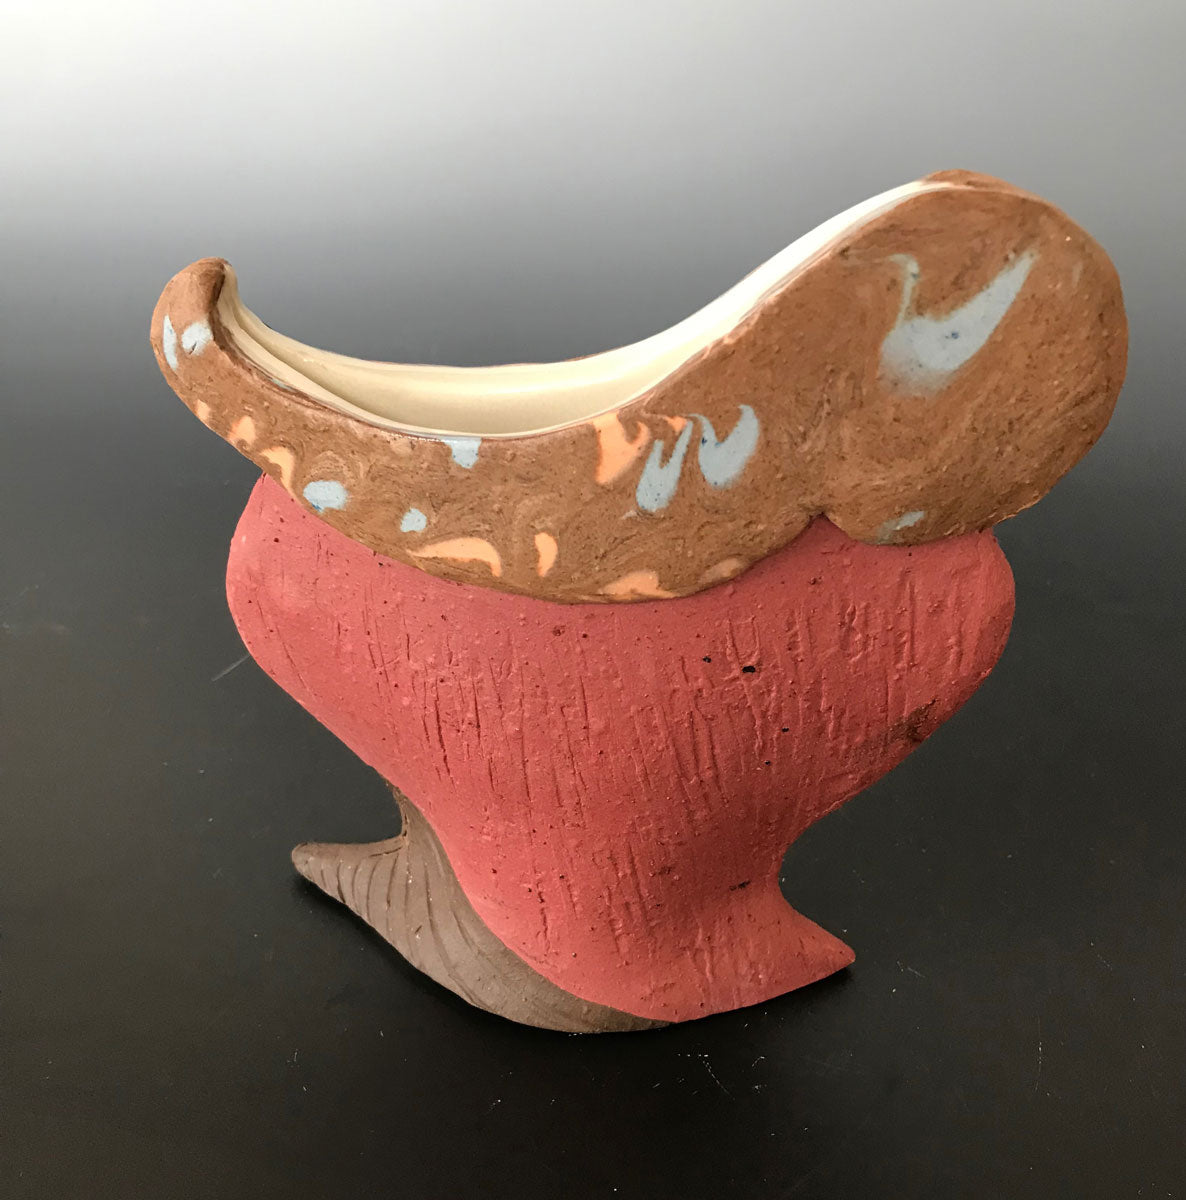 97. Swiss Vase